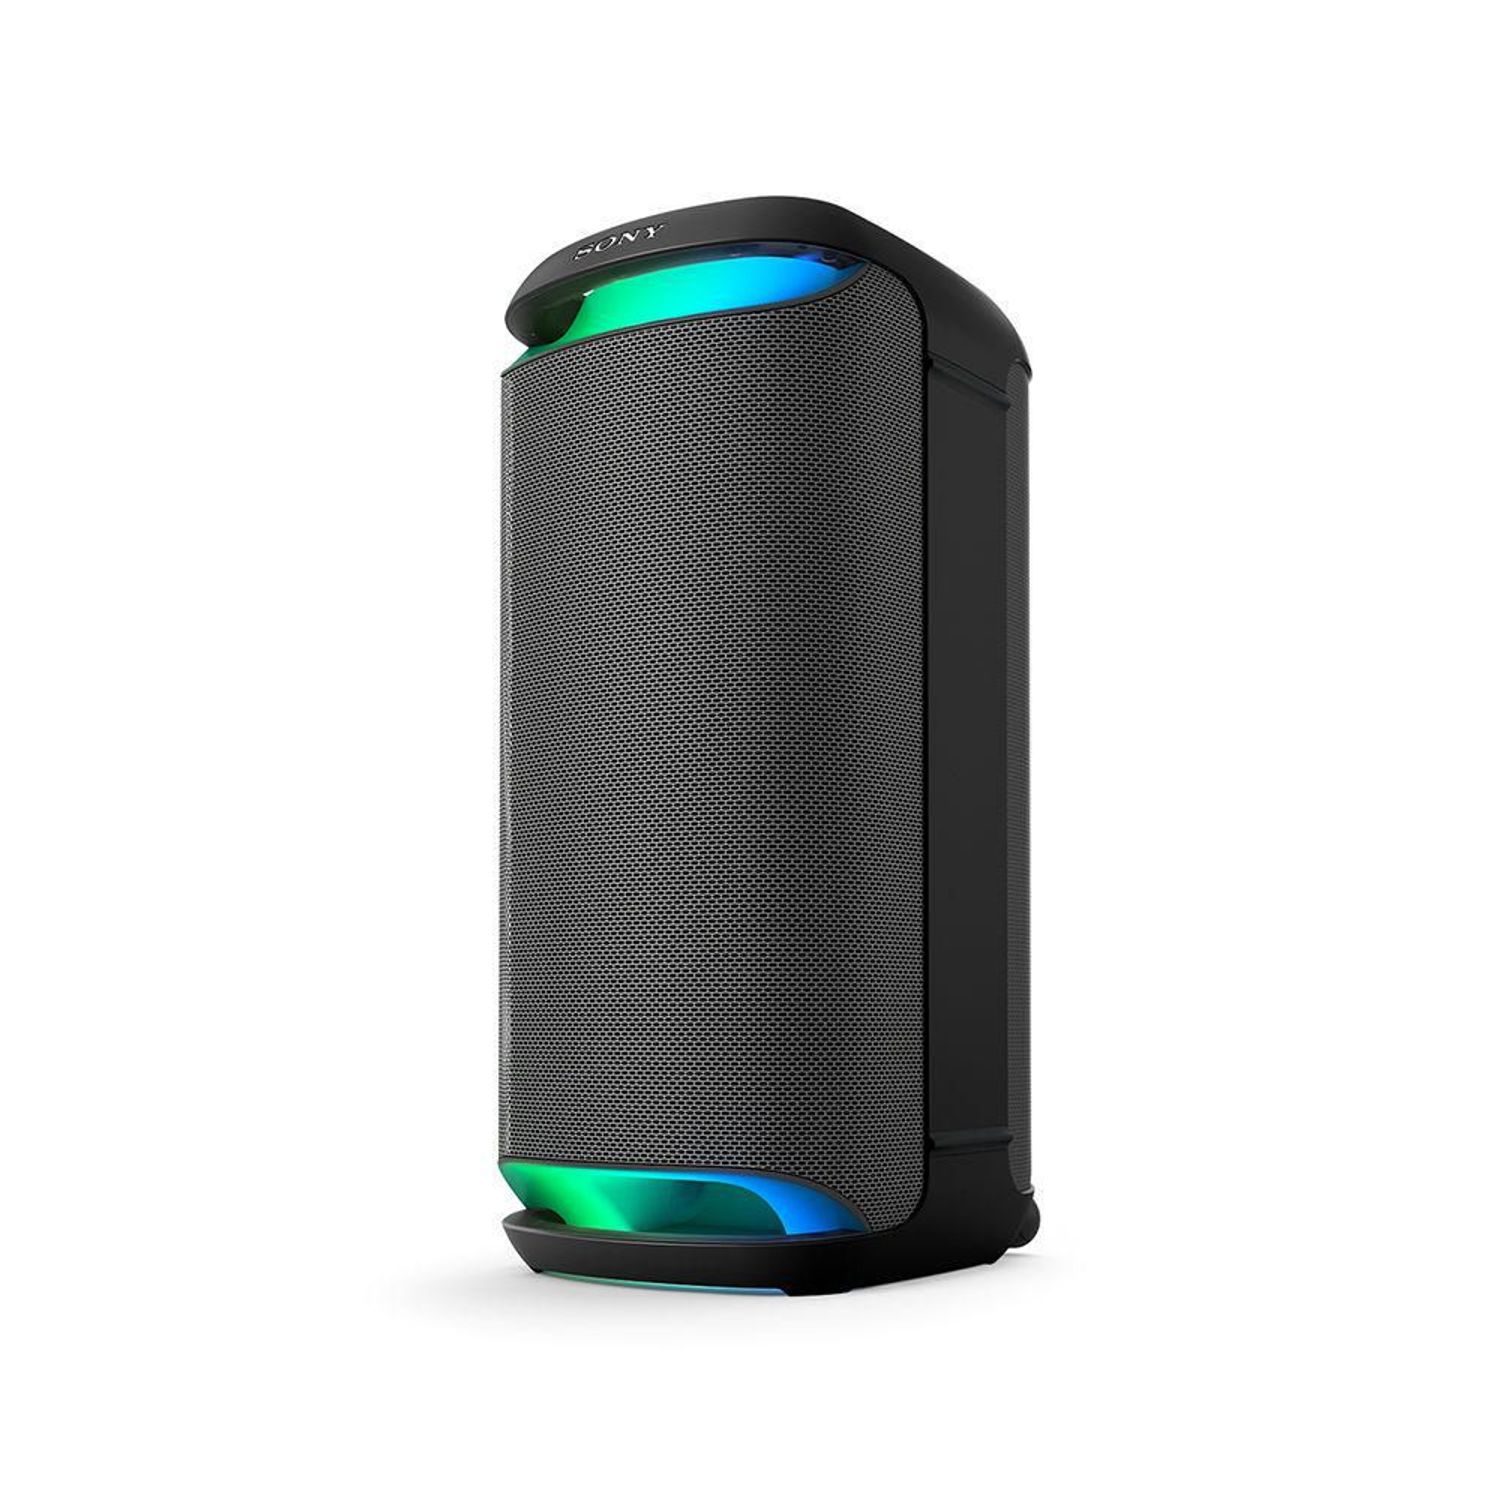 Xtreme 3 Altavoz Bluetooth portátil sonido potente y graves profundos -  VIRTUAL MUEBLES